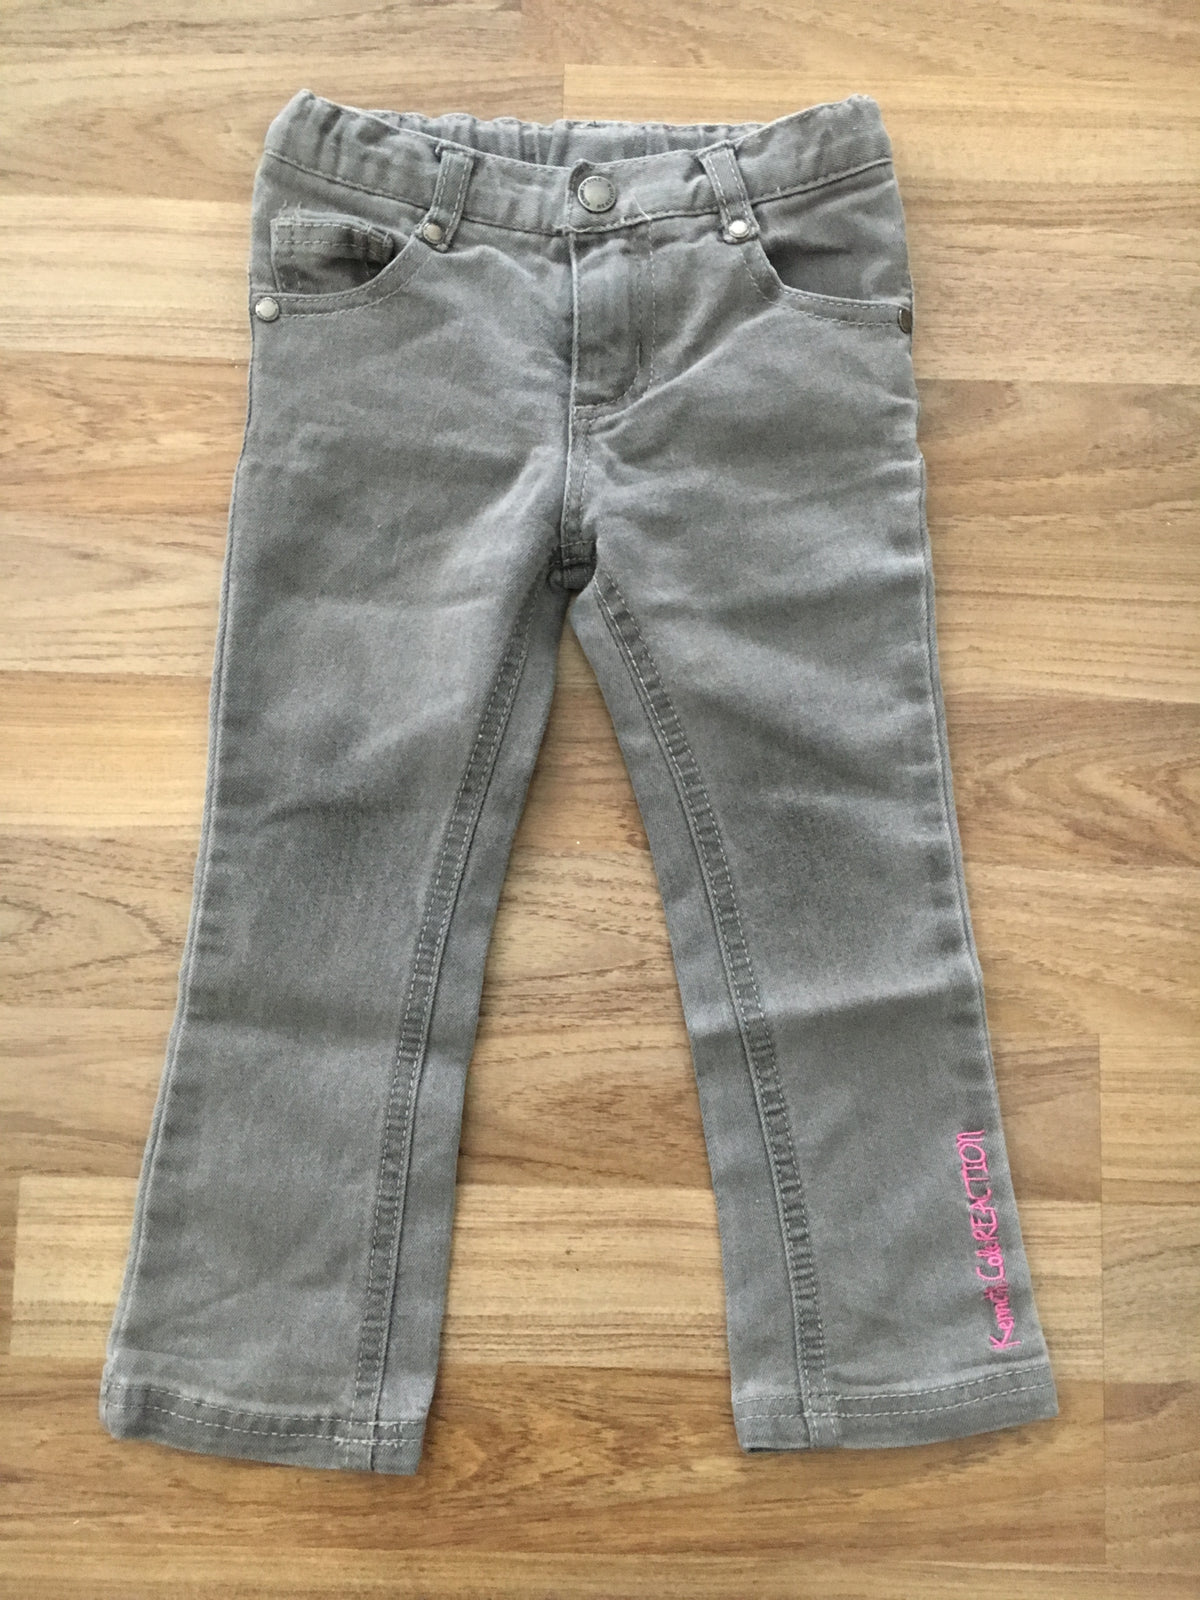 Lightweight Jeans (Girls Size 3)